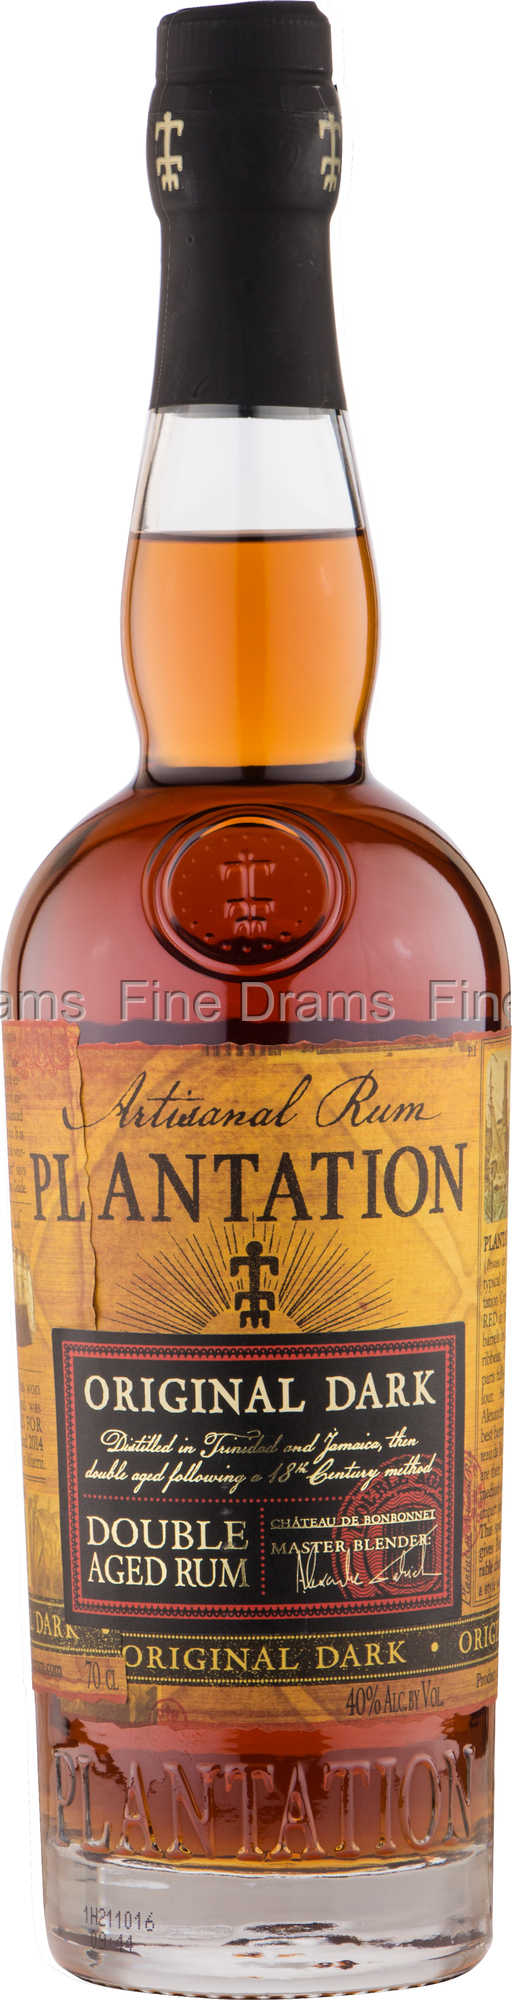 Rum Original Dark Plantation